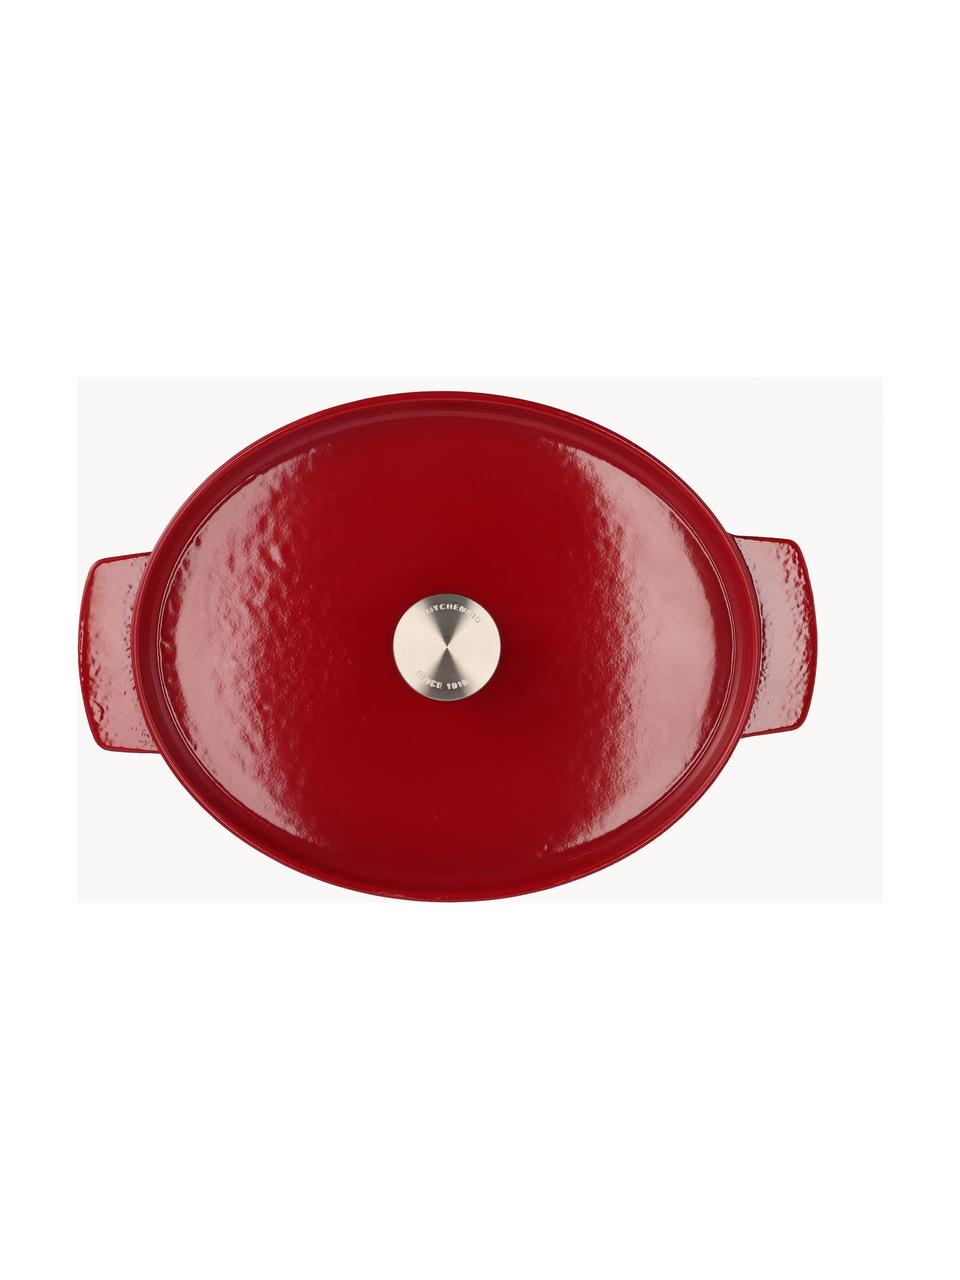 Ovaler Bräter Doelle mit Antihaftbeschichtung, Gusseisen mit Keramik-Antihaftbeschichtung, Rot, L 40 x B 29 x H 16 cm